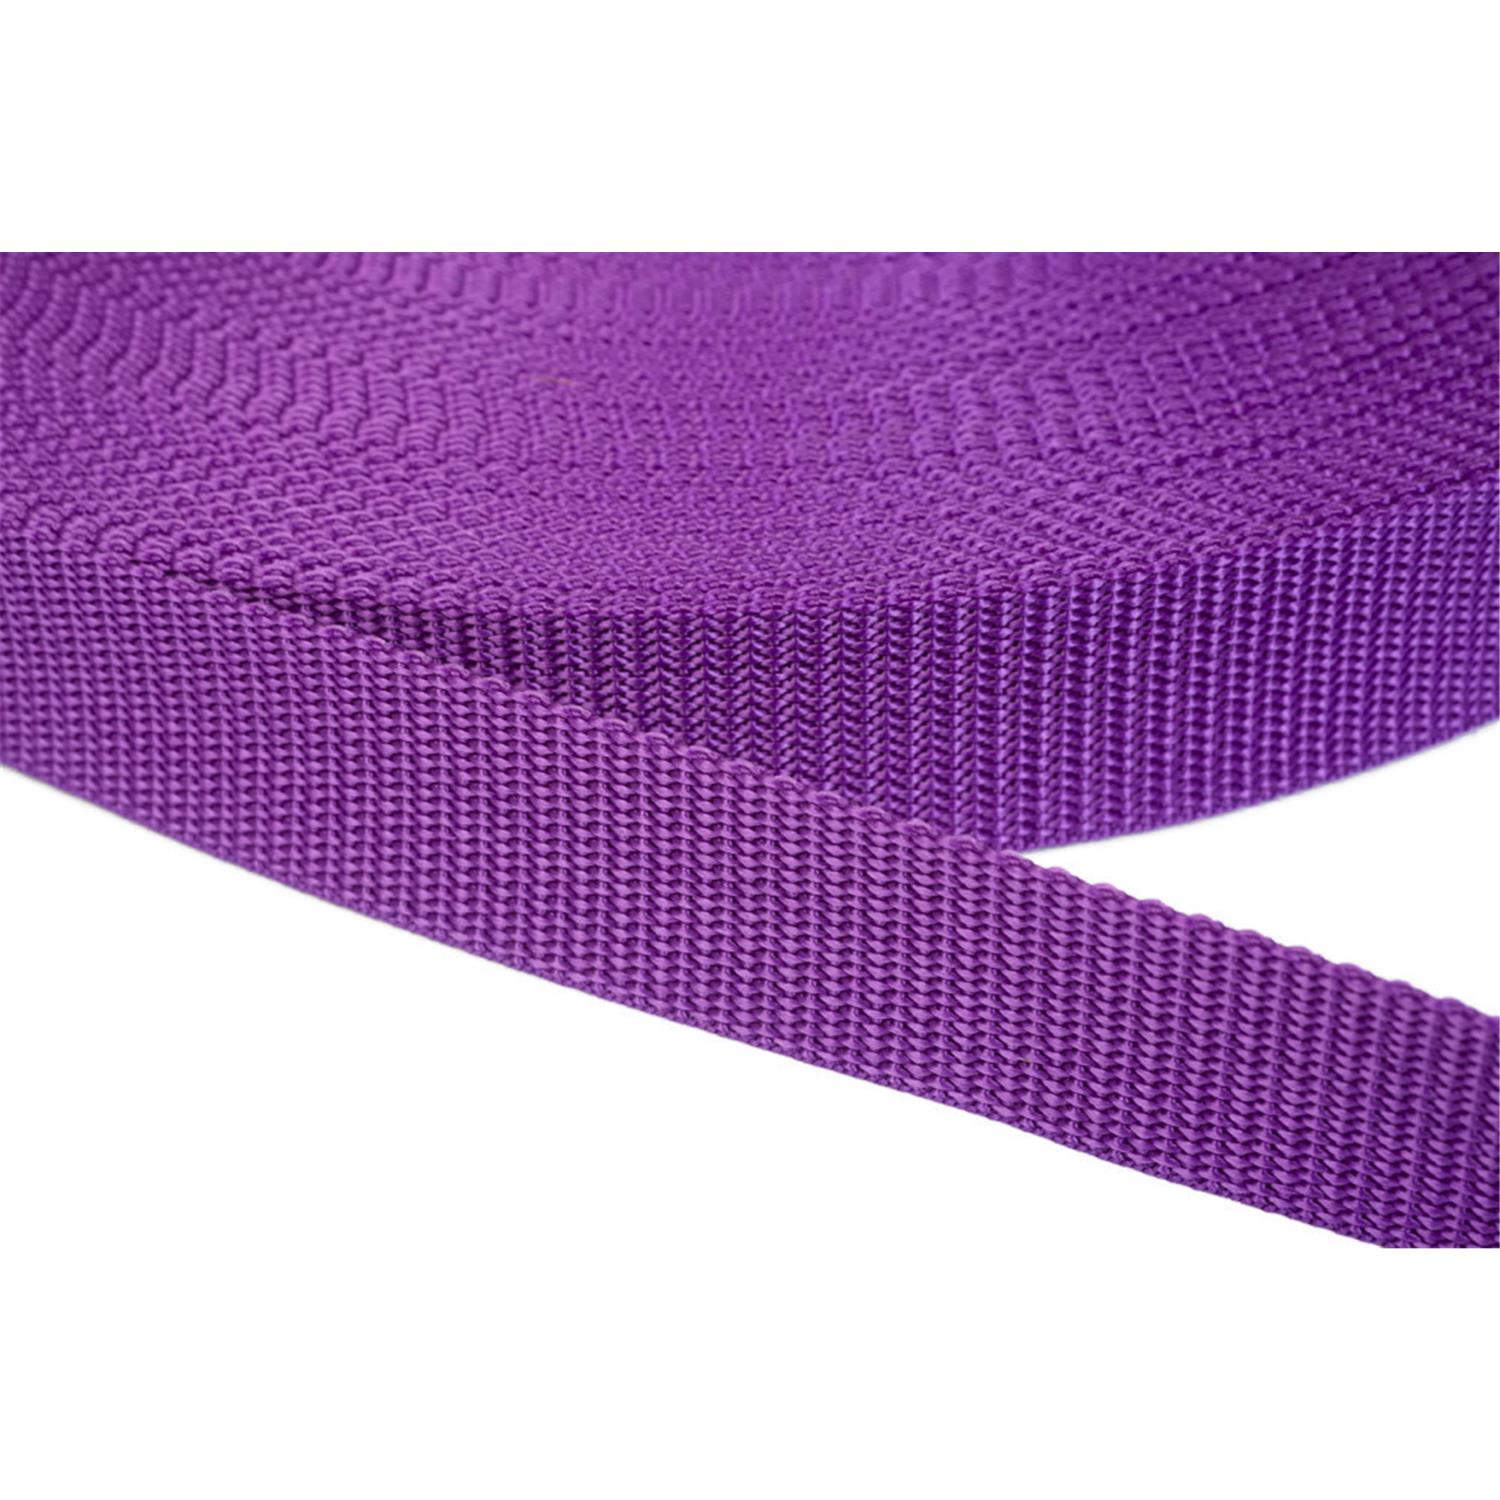 Gurtband 25mm breit aus Polypropylen in 41 Farben 24 - lila 6 Meter